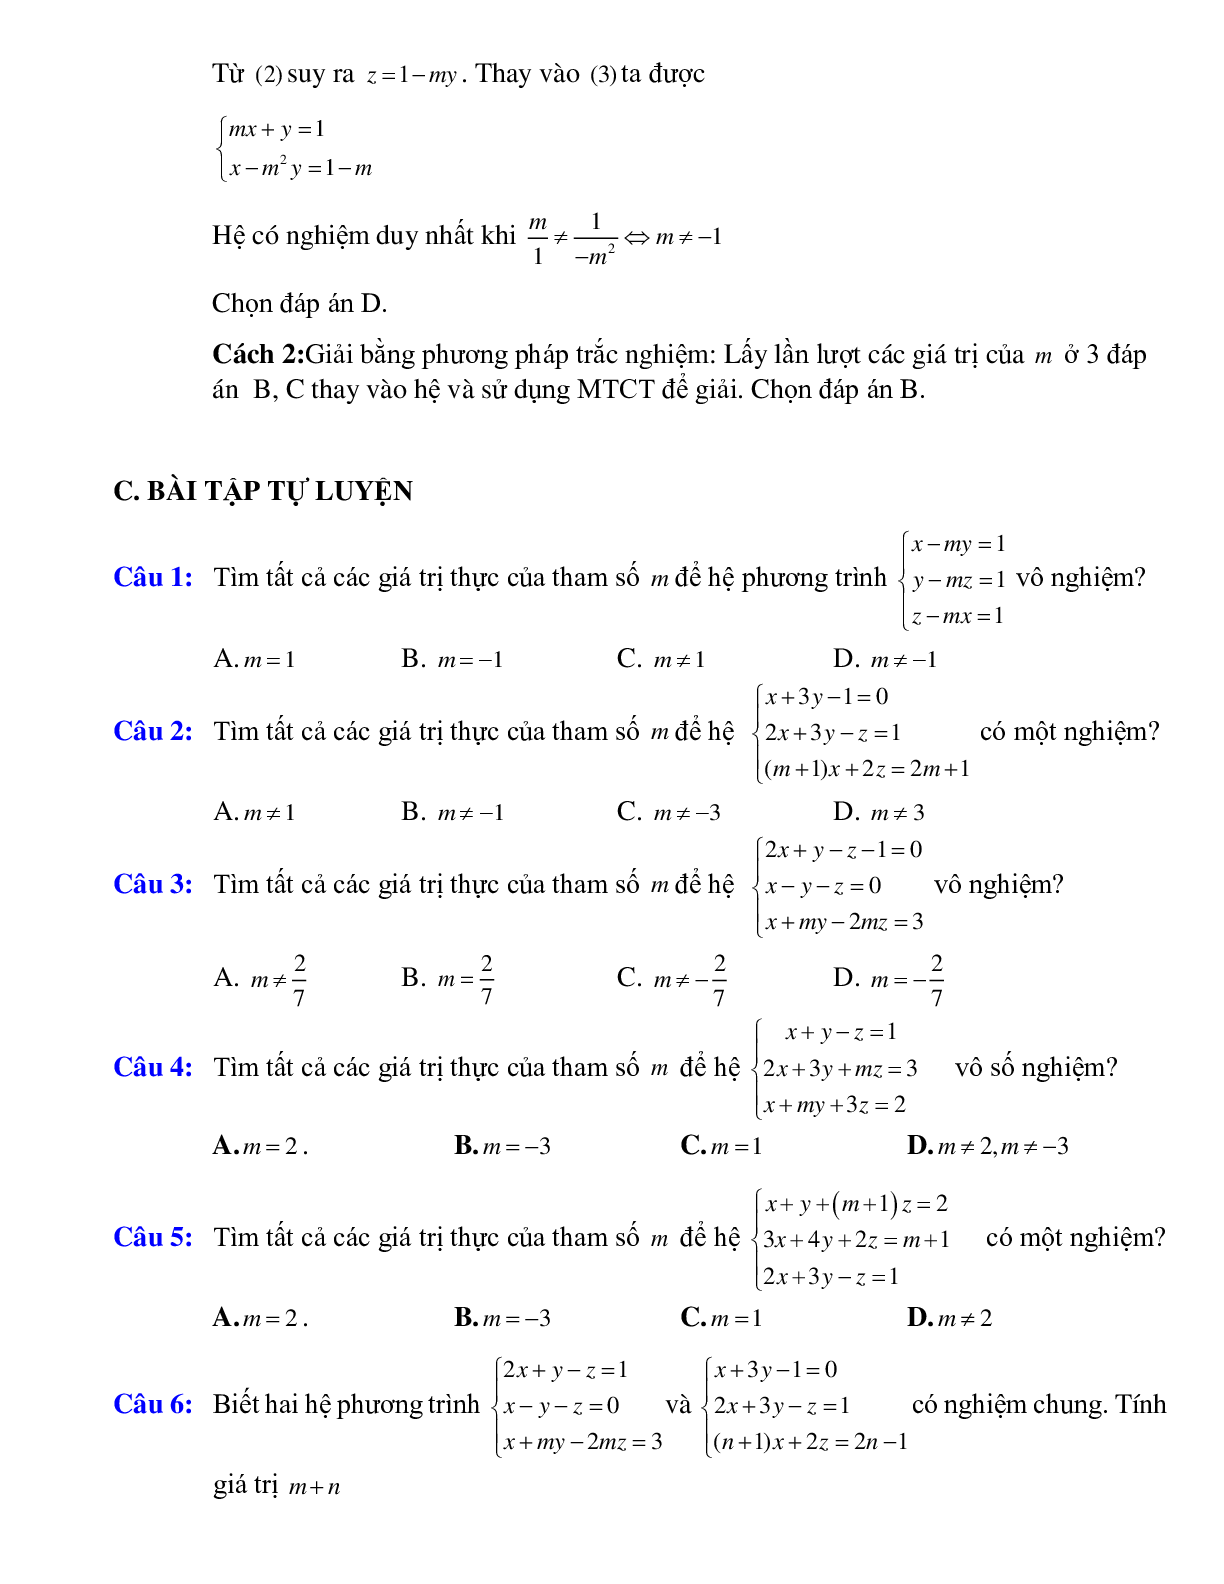 Tìm điều kiện của tham số đề hệ ba phương trình bậc nhất ba ẩn có nghiệm thỏa mãn điều kiện cho trước (trang 3)